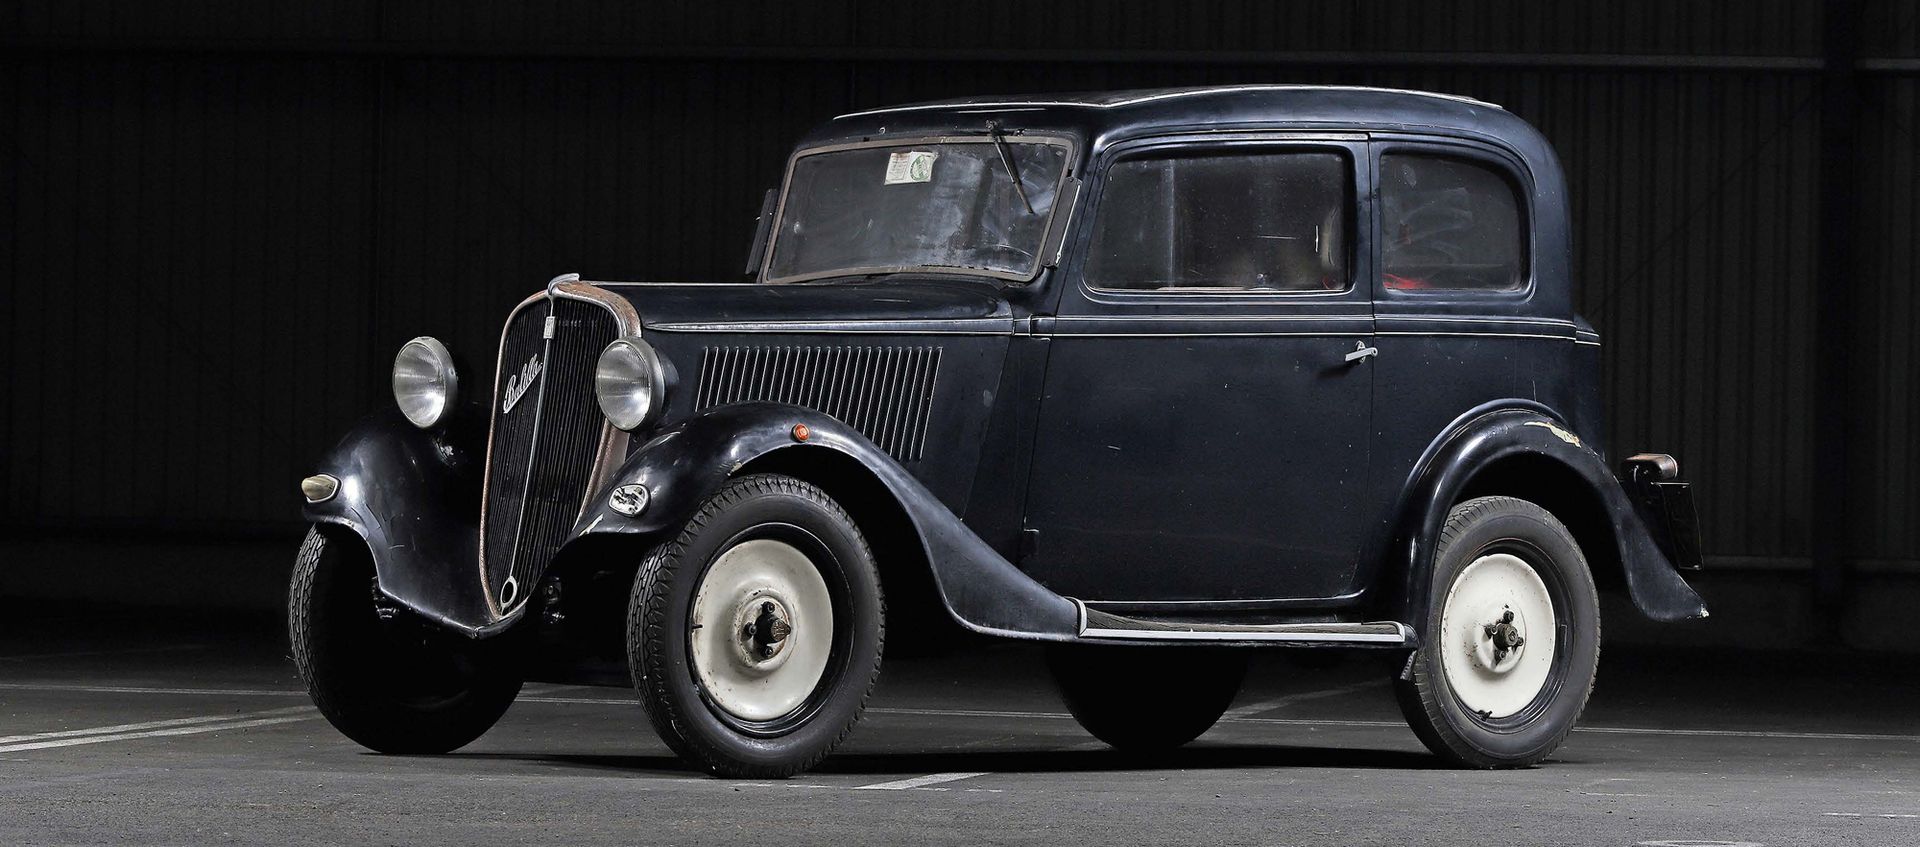 1933 FIAT 508 Balilla 
Senza riserve



Icona popolare italiana

Interessante pr&hellip;